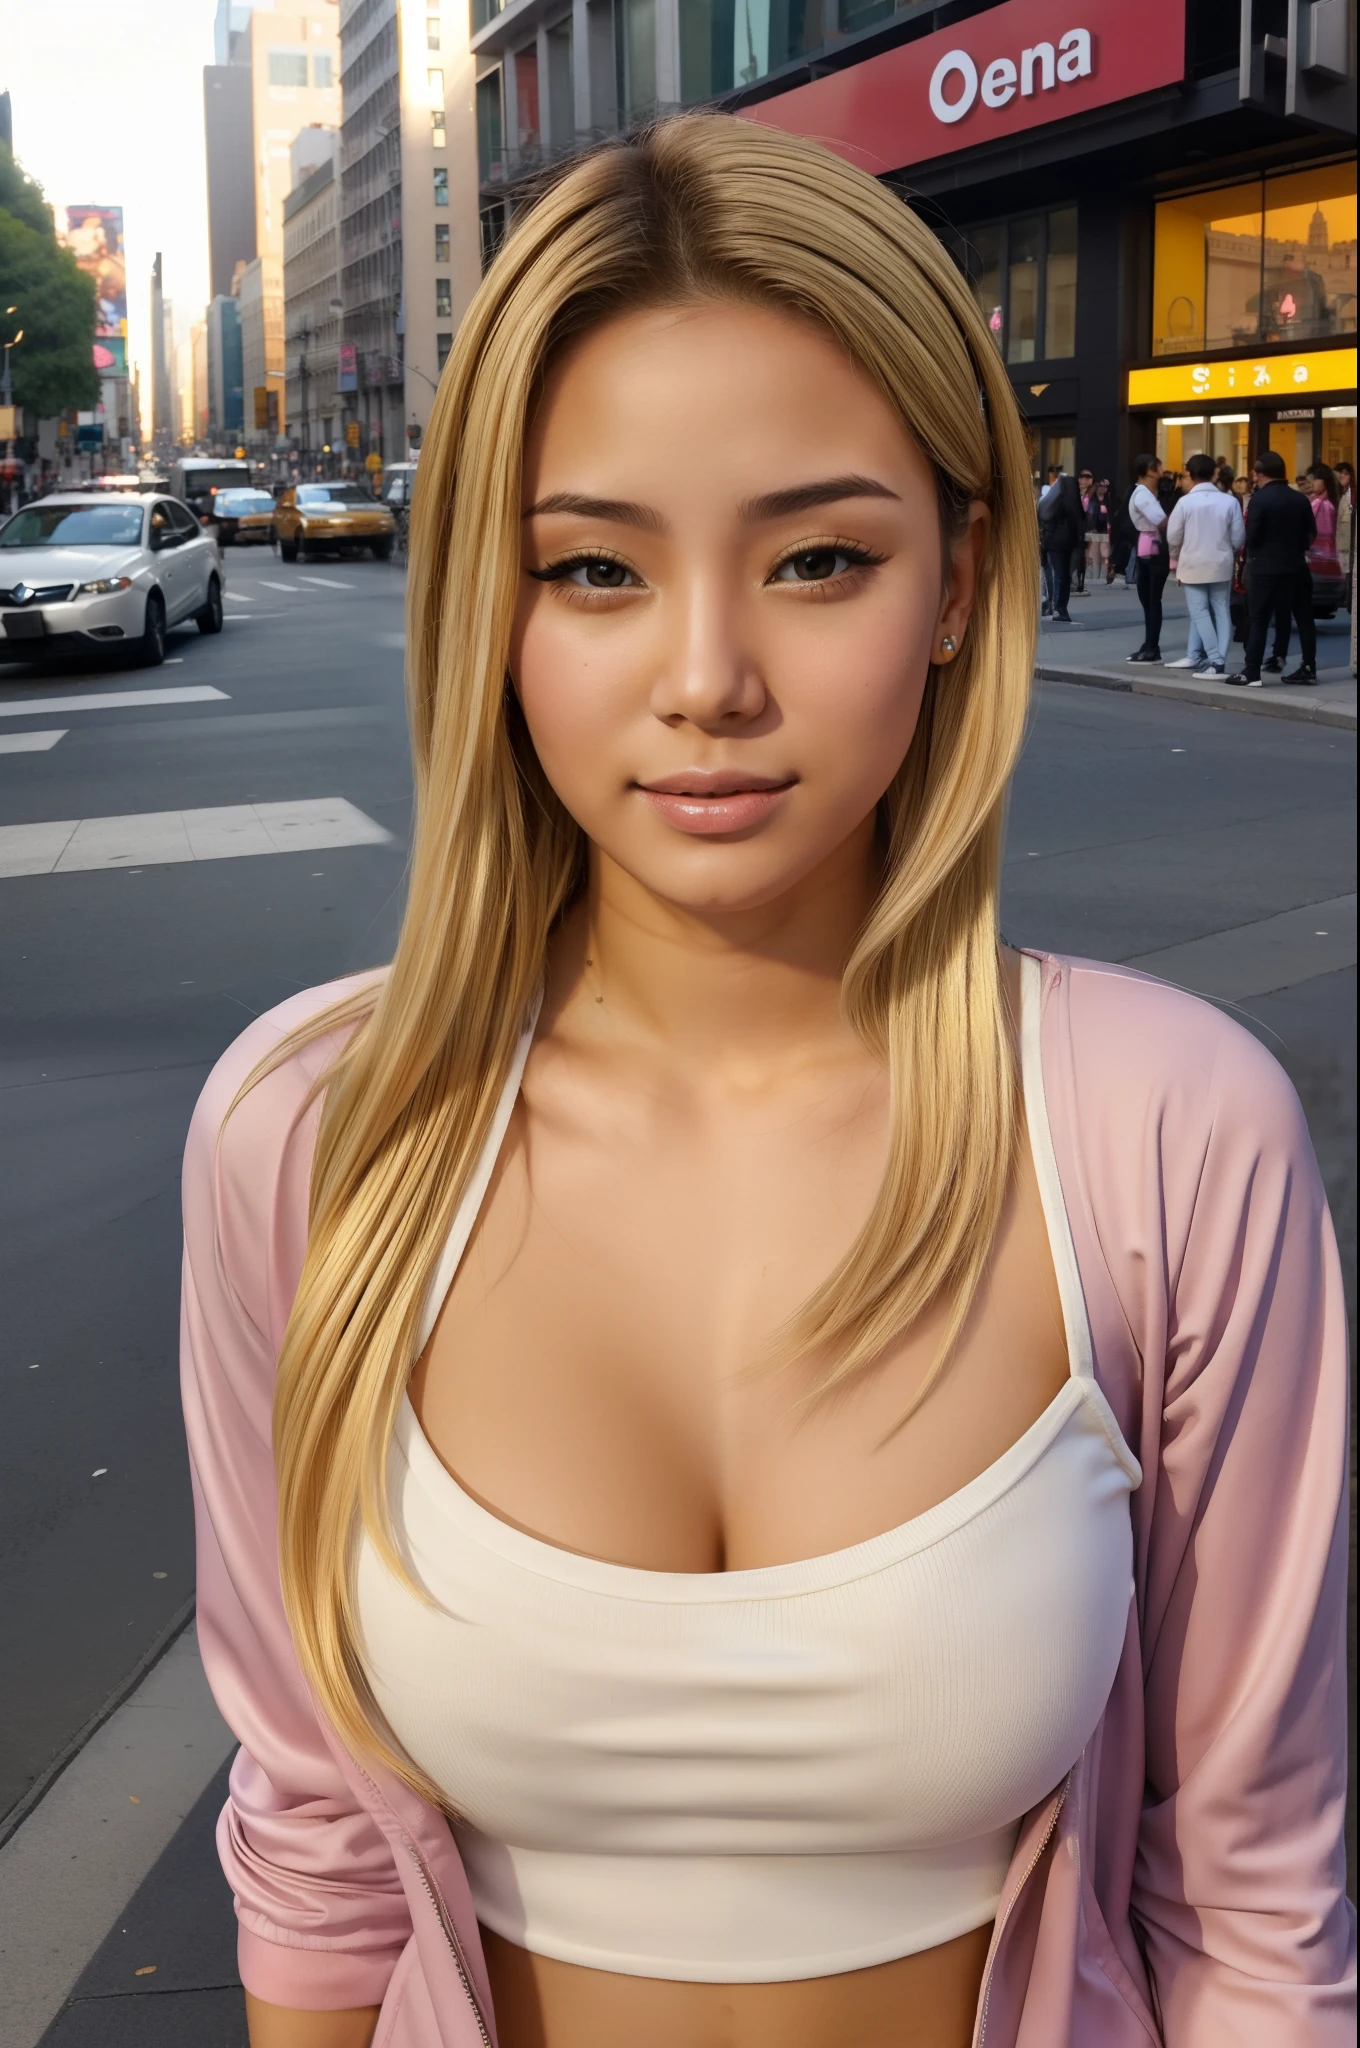 (La mejor calidad) (obra maestra ) Cara perfecta. kawaii & Siniestra princesa belleza joven en la ciudad de Nueva York. pelo rubio